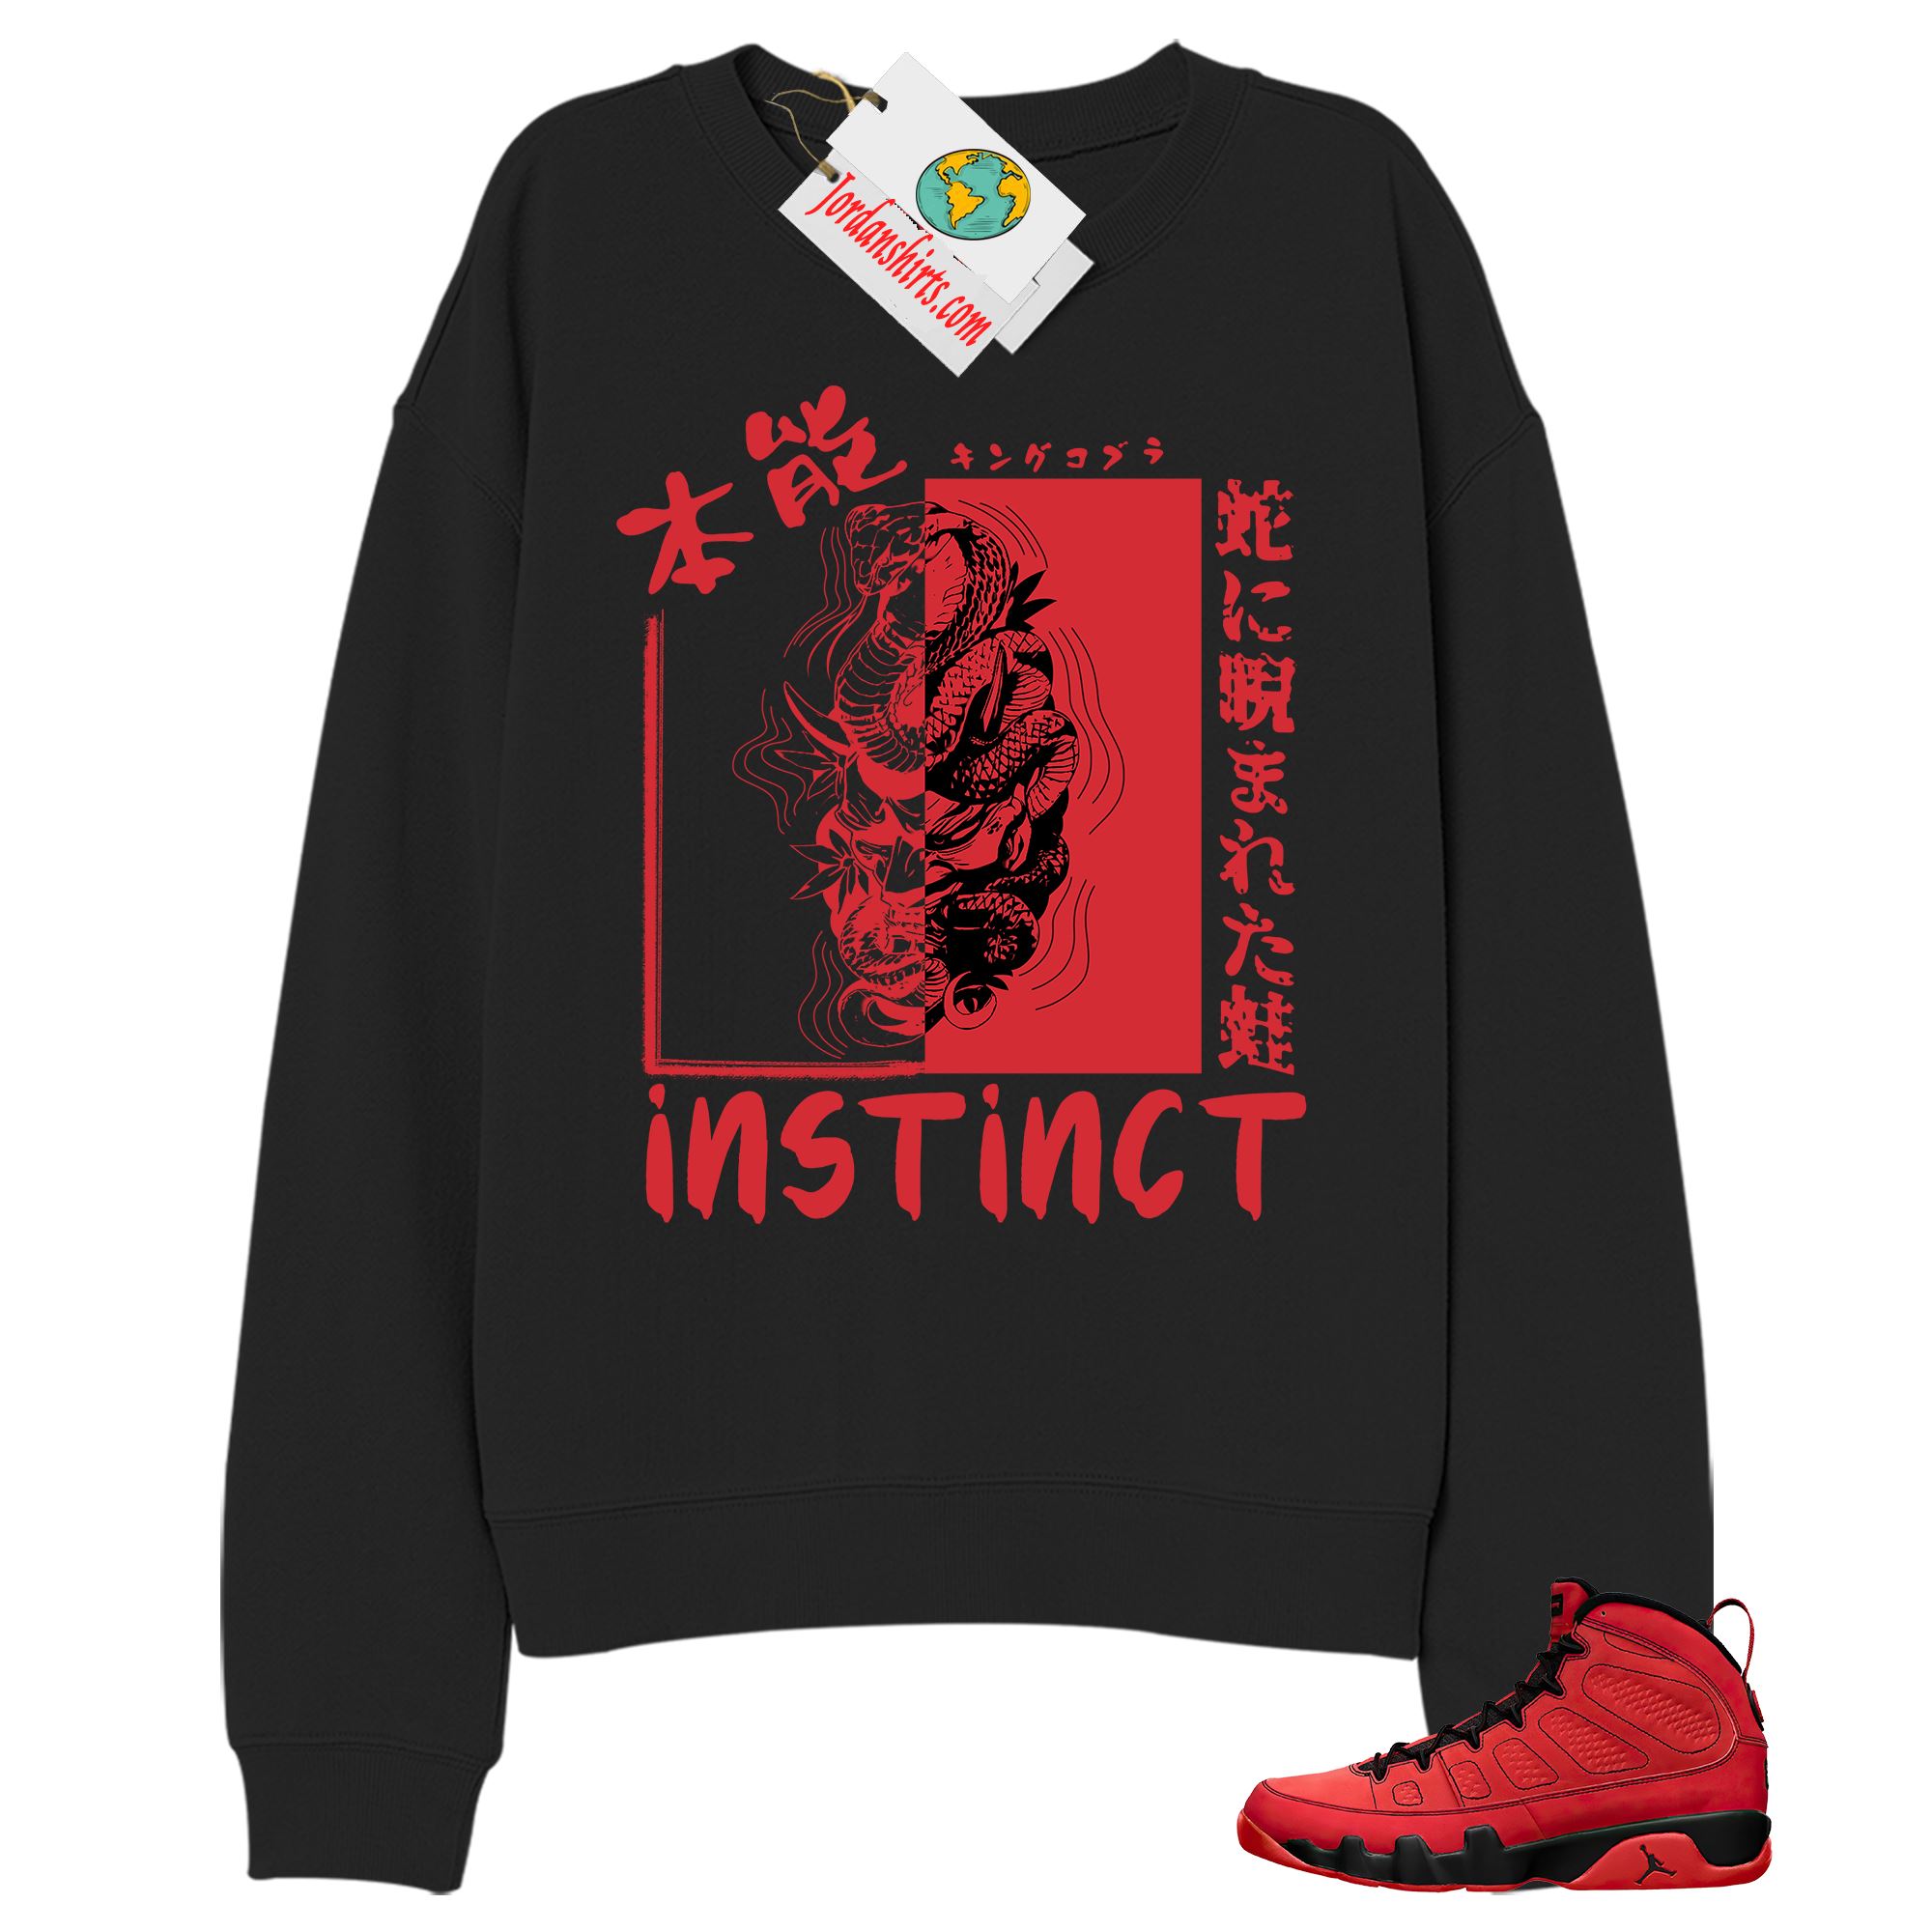 Jordan 9 Sweatshirt, Instinct Fearless Snake Black Sweatshirt Air Jordan 9 Chile Red 9s Size Up To 5xl